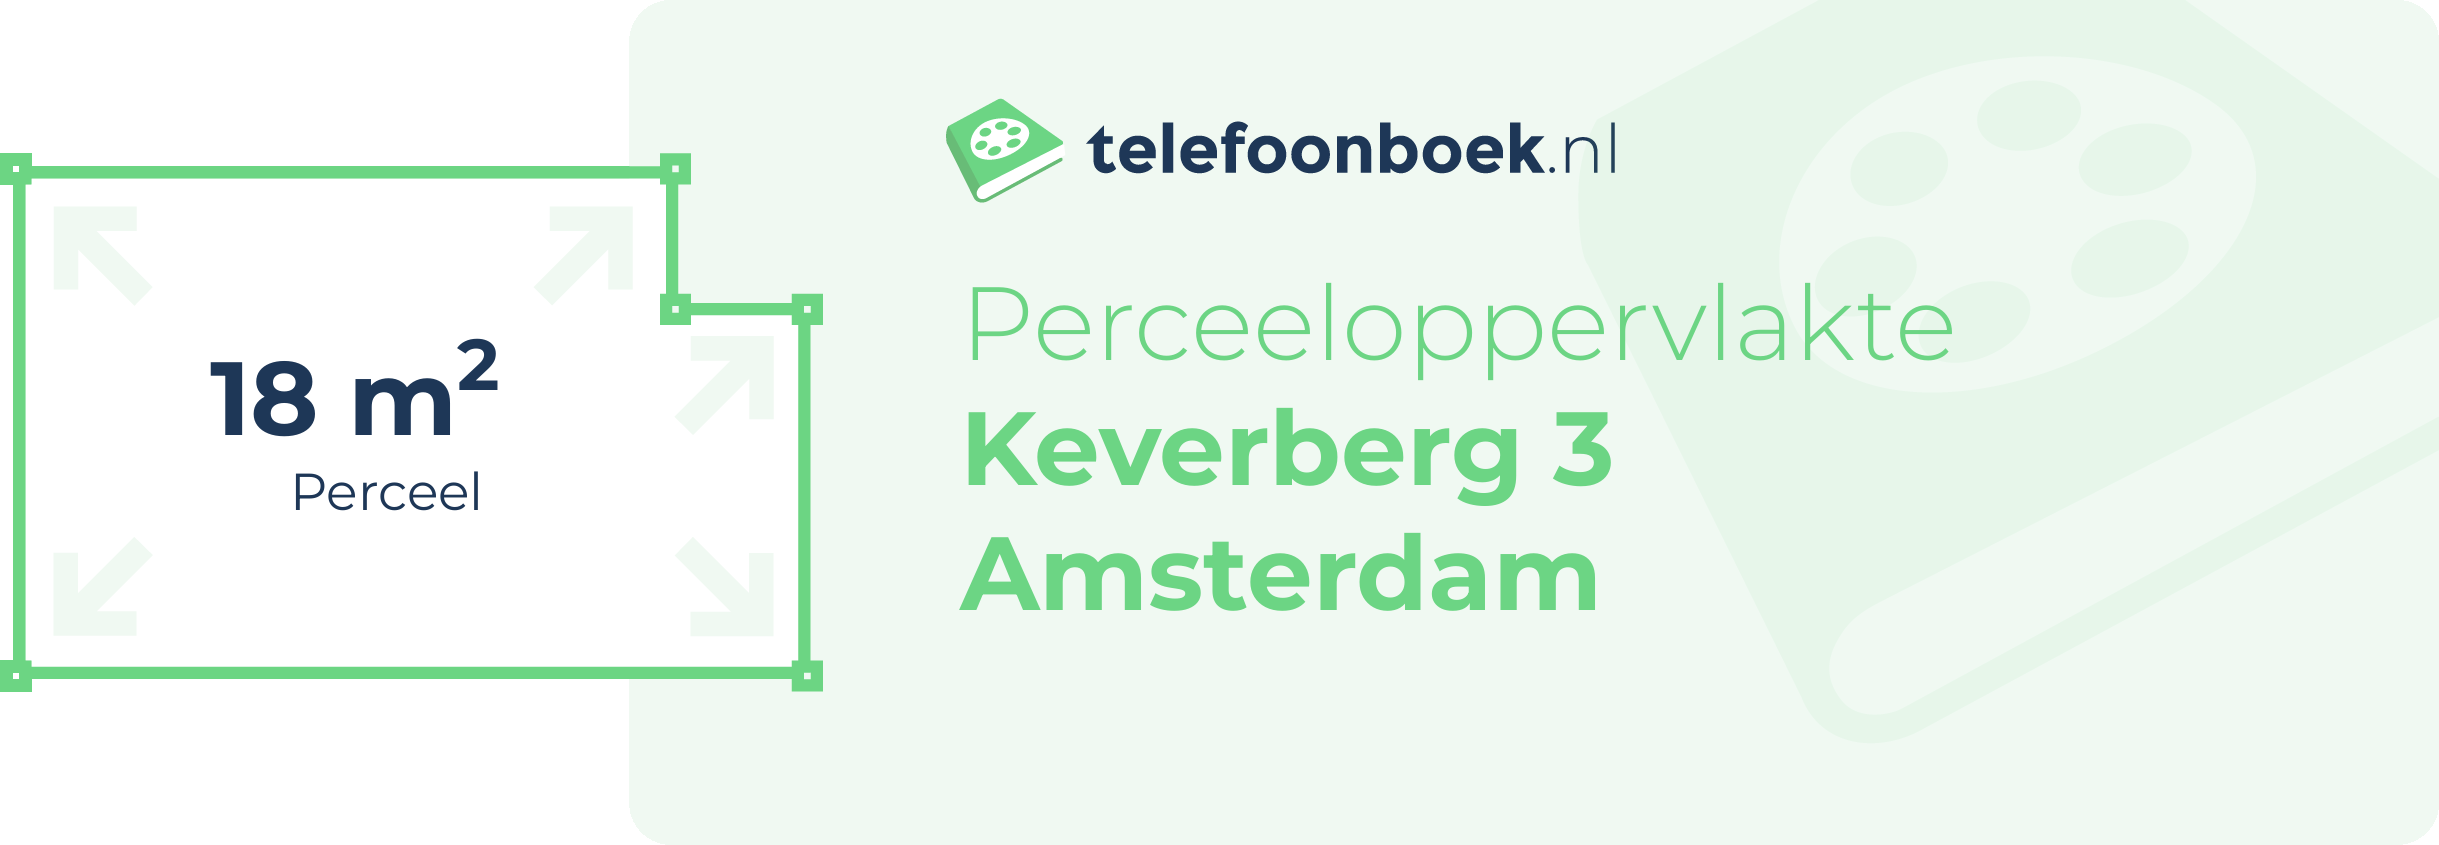 Perceeloppervlakte Keverberg 3 Amsterdam